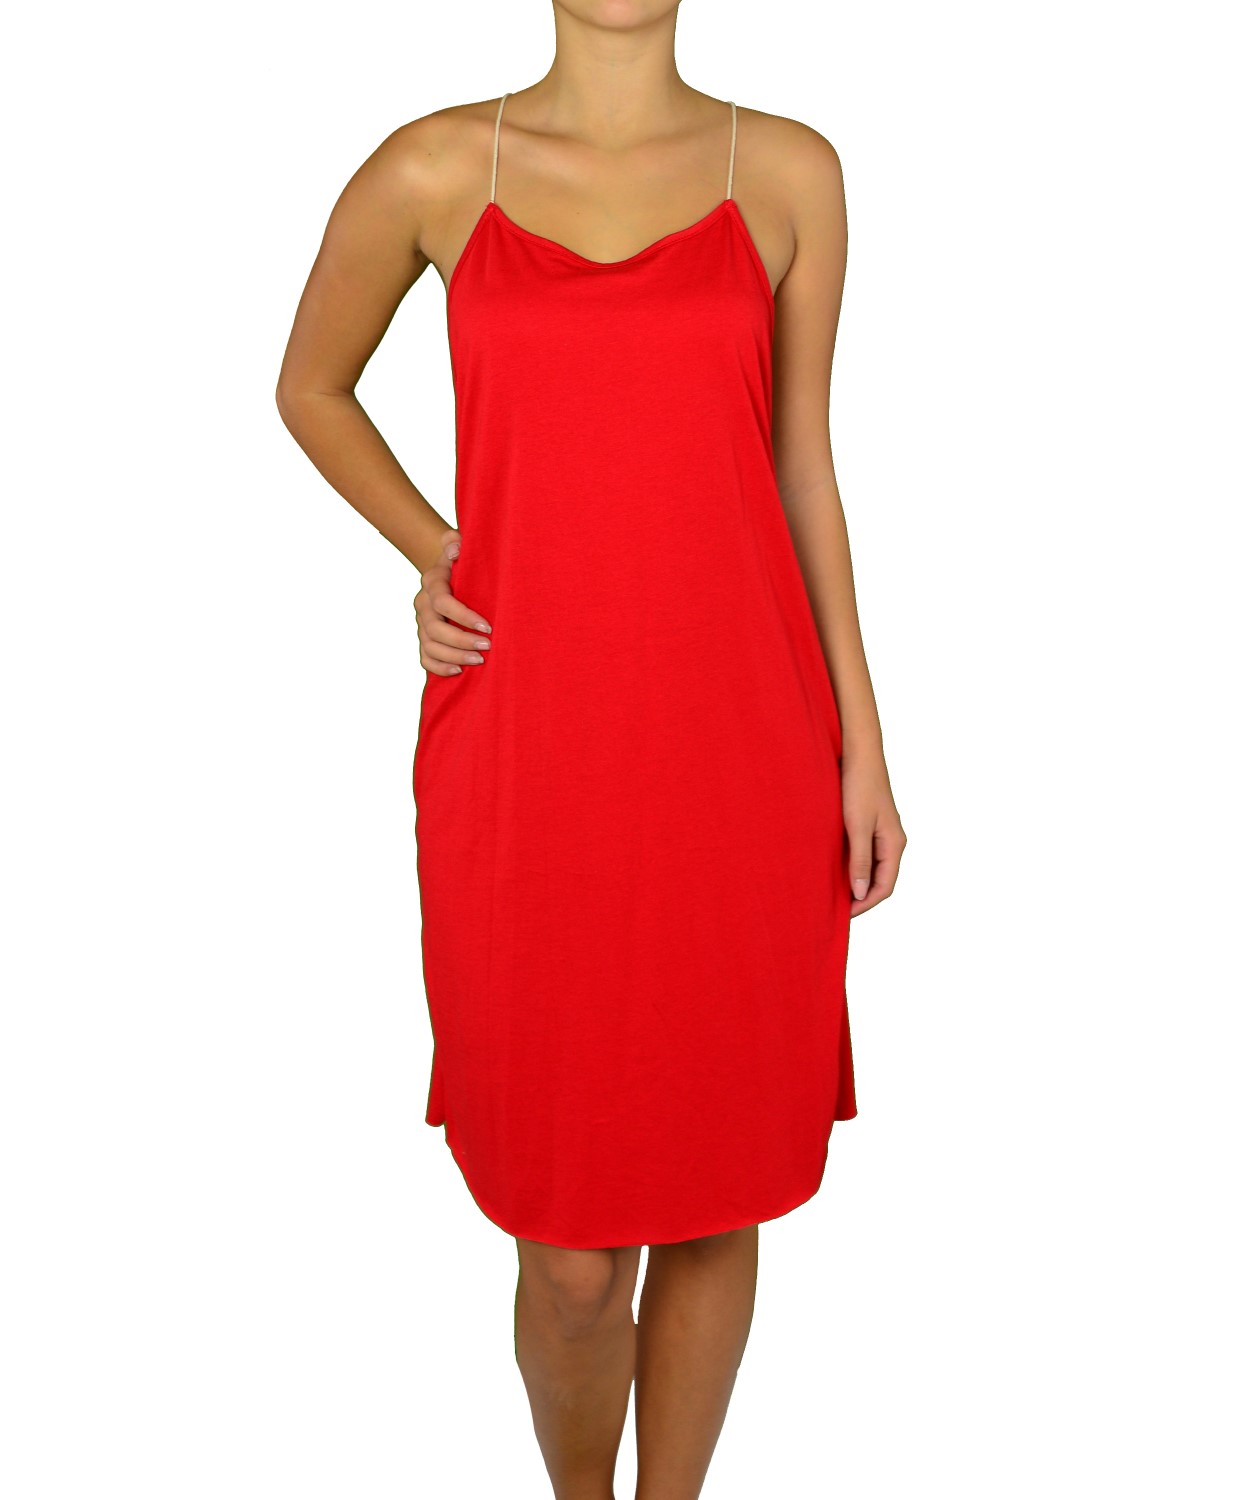 Γυναικείο midi φόρεμα Coocu κόκκινο 91693G